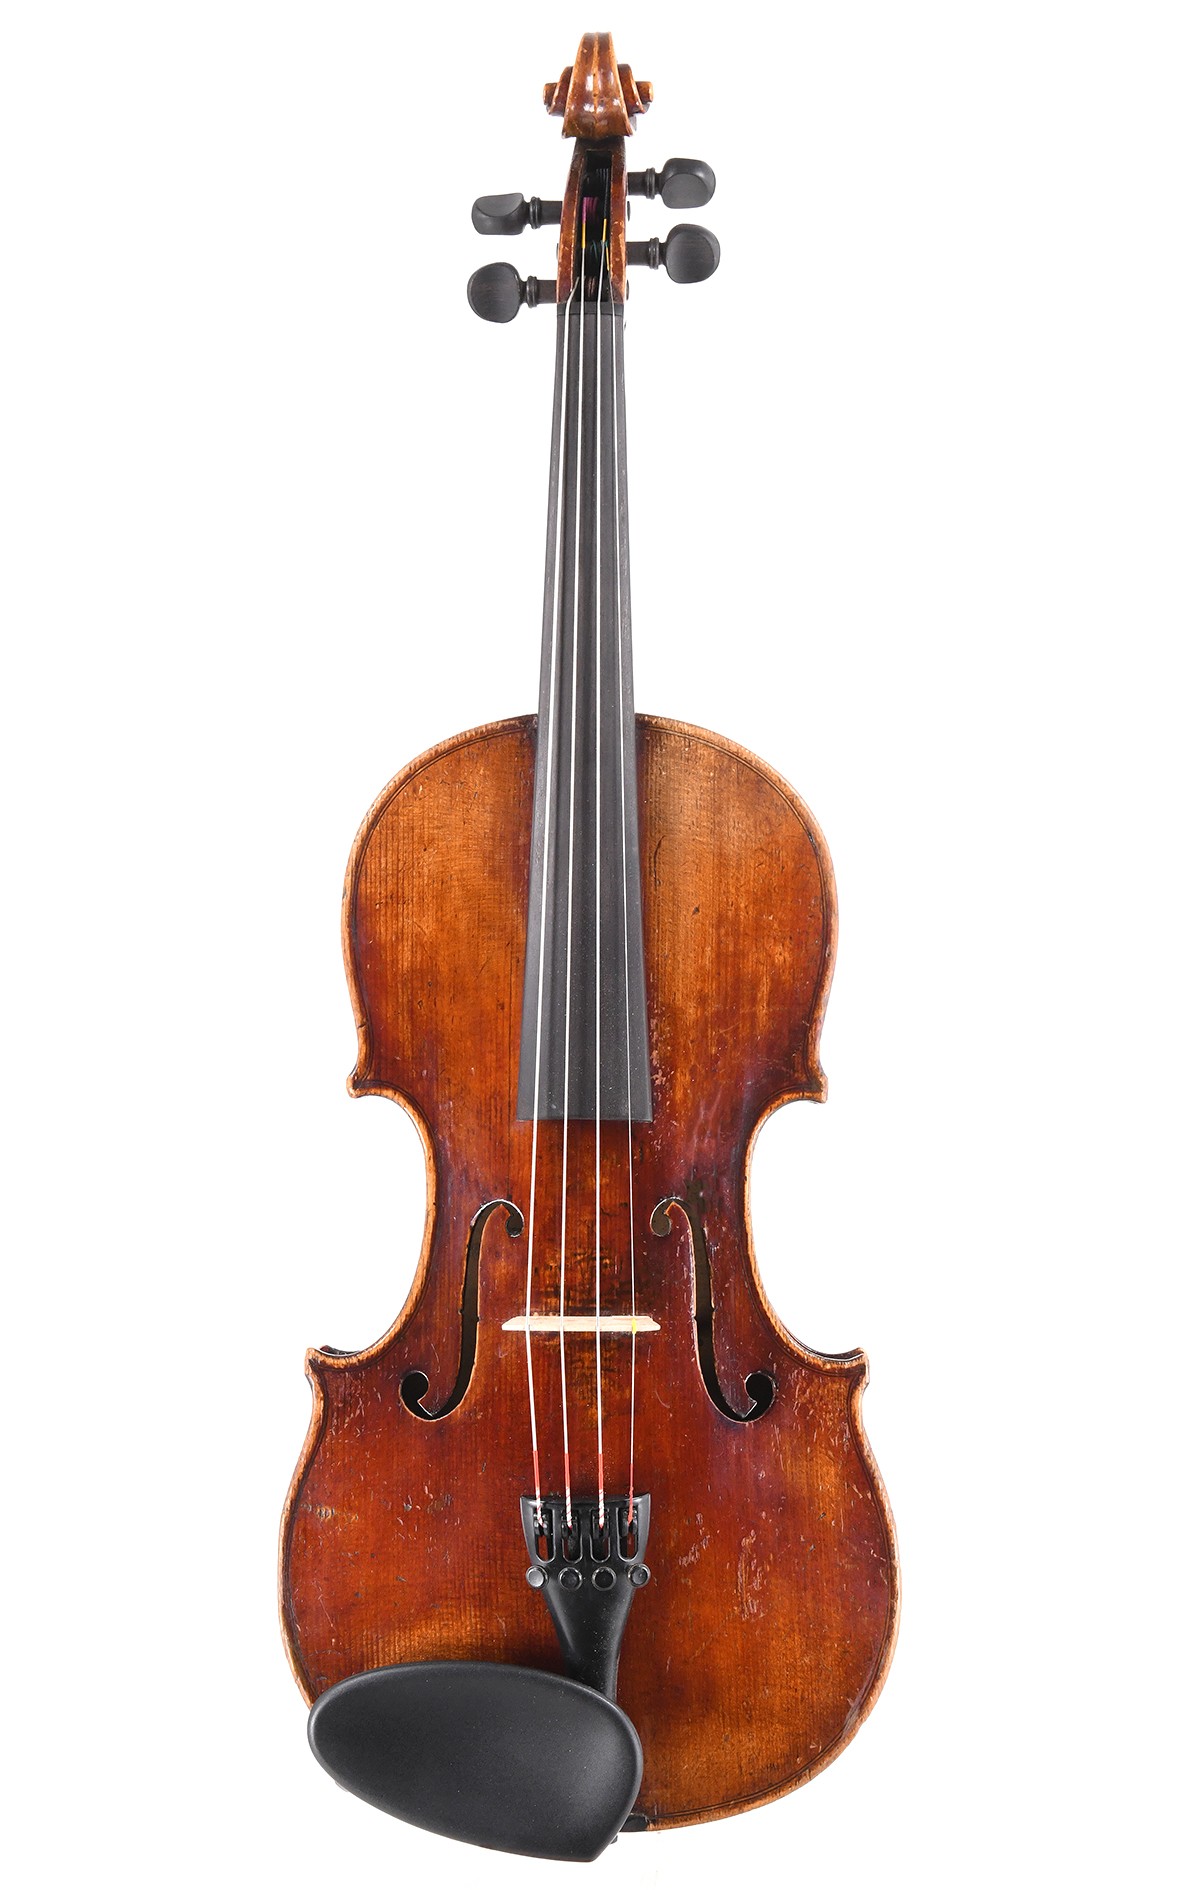 3/4 violin by Neuner & Hornsteiner